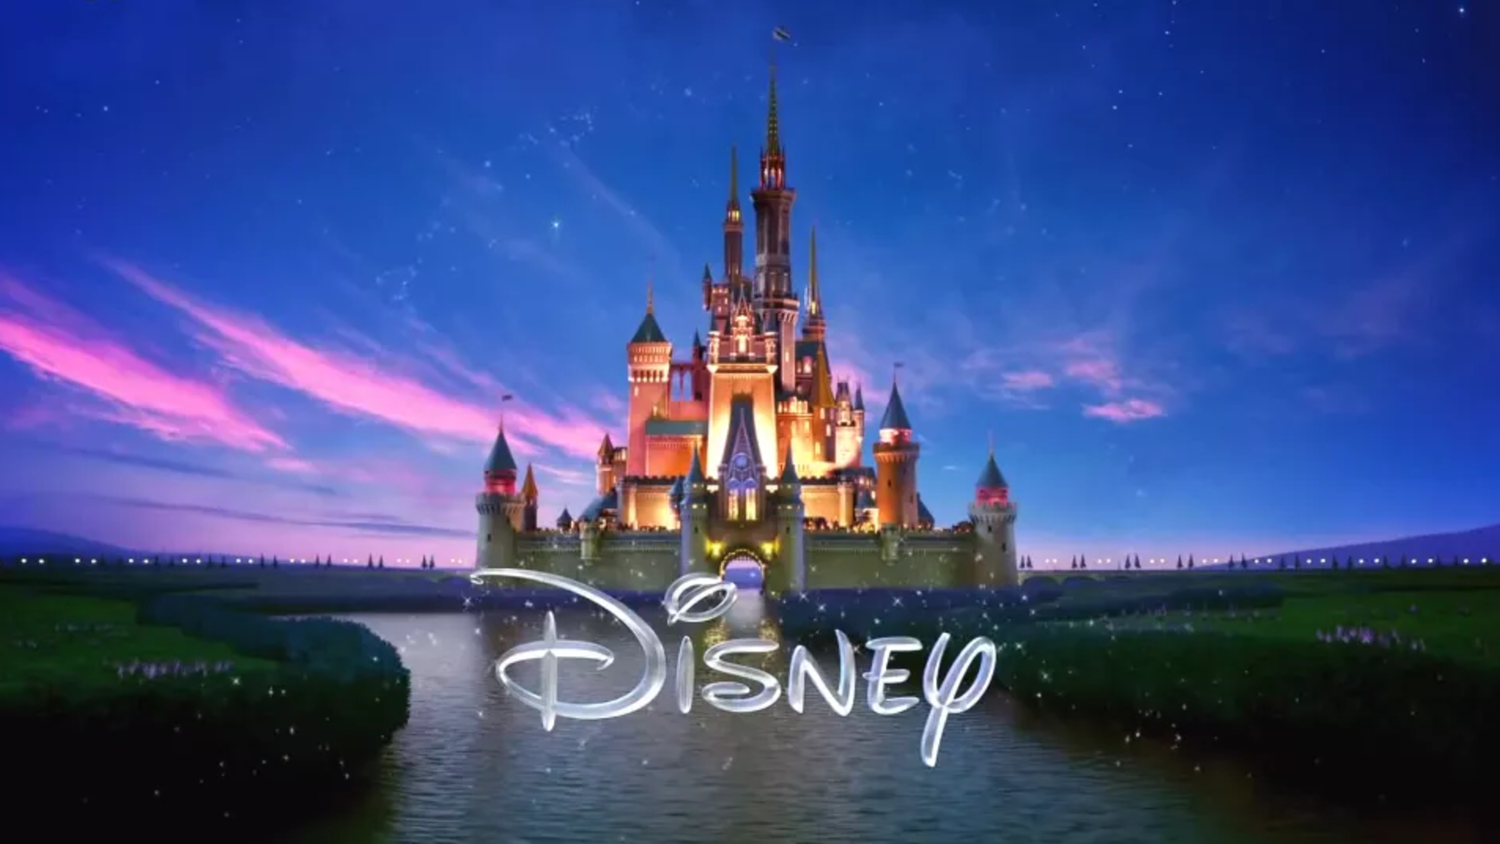 Le PDG de Disney, Bob Iger, prévoit de réduire les sorties en salles pour renforcer la production créative